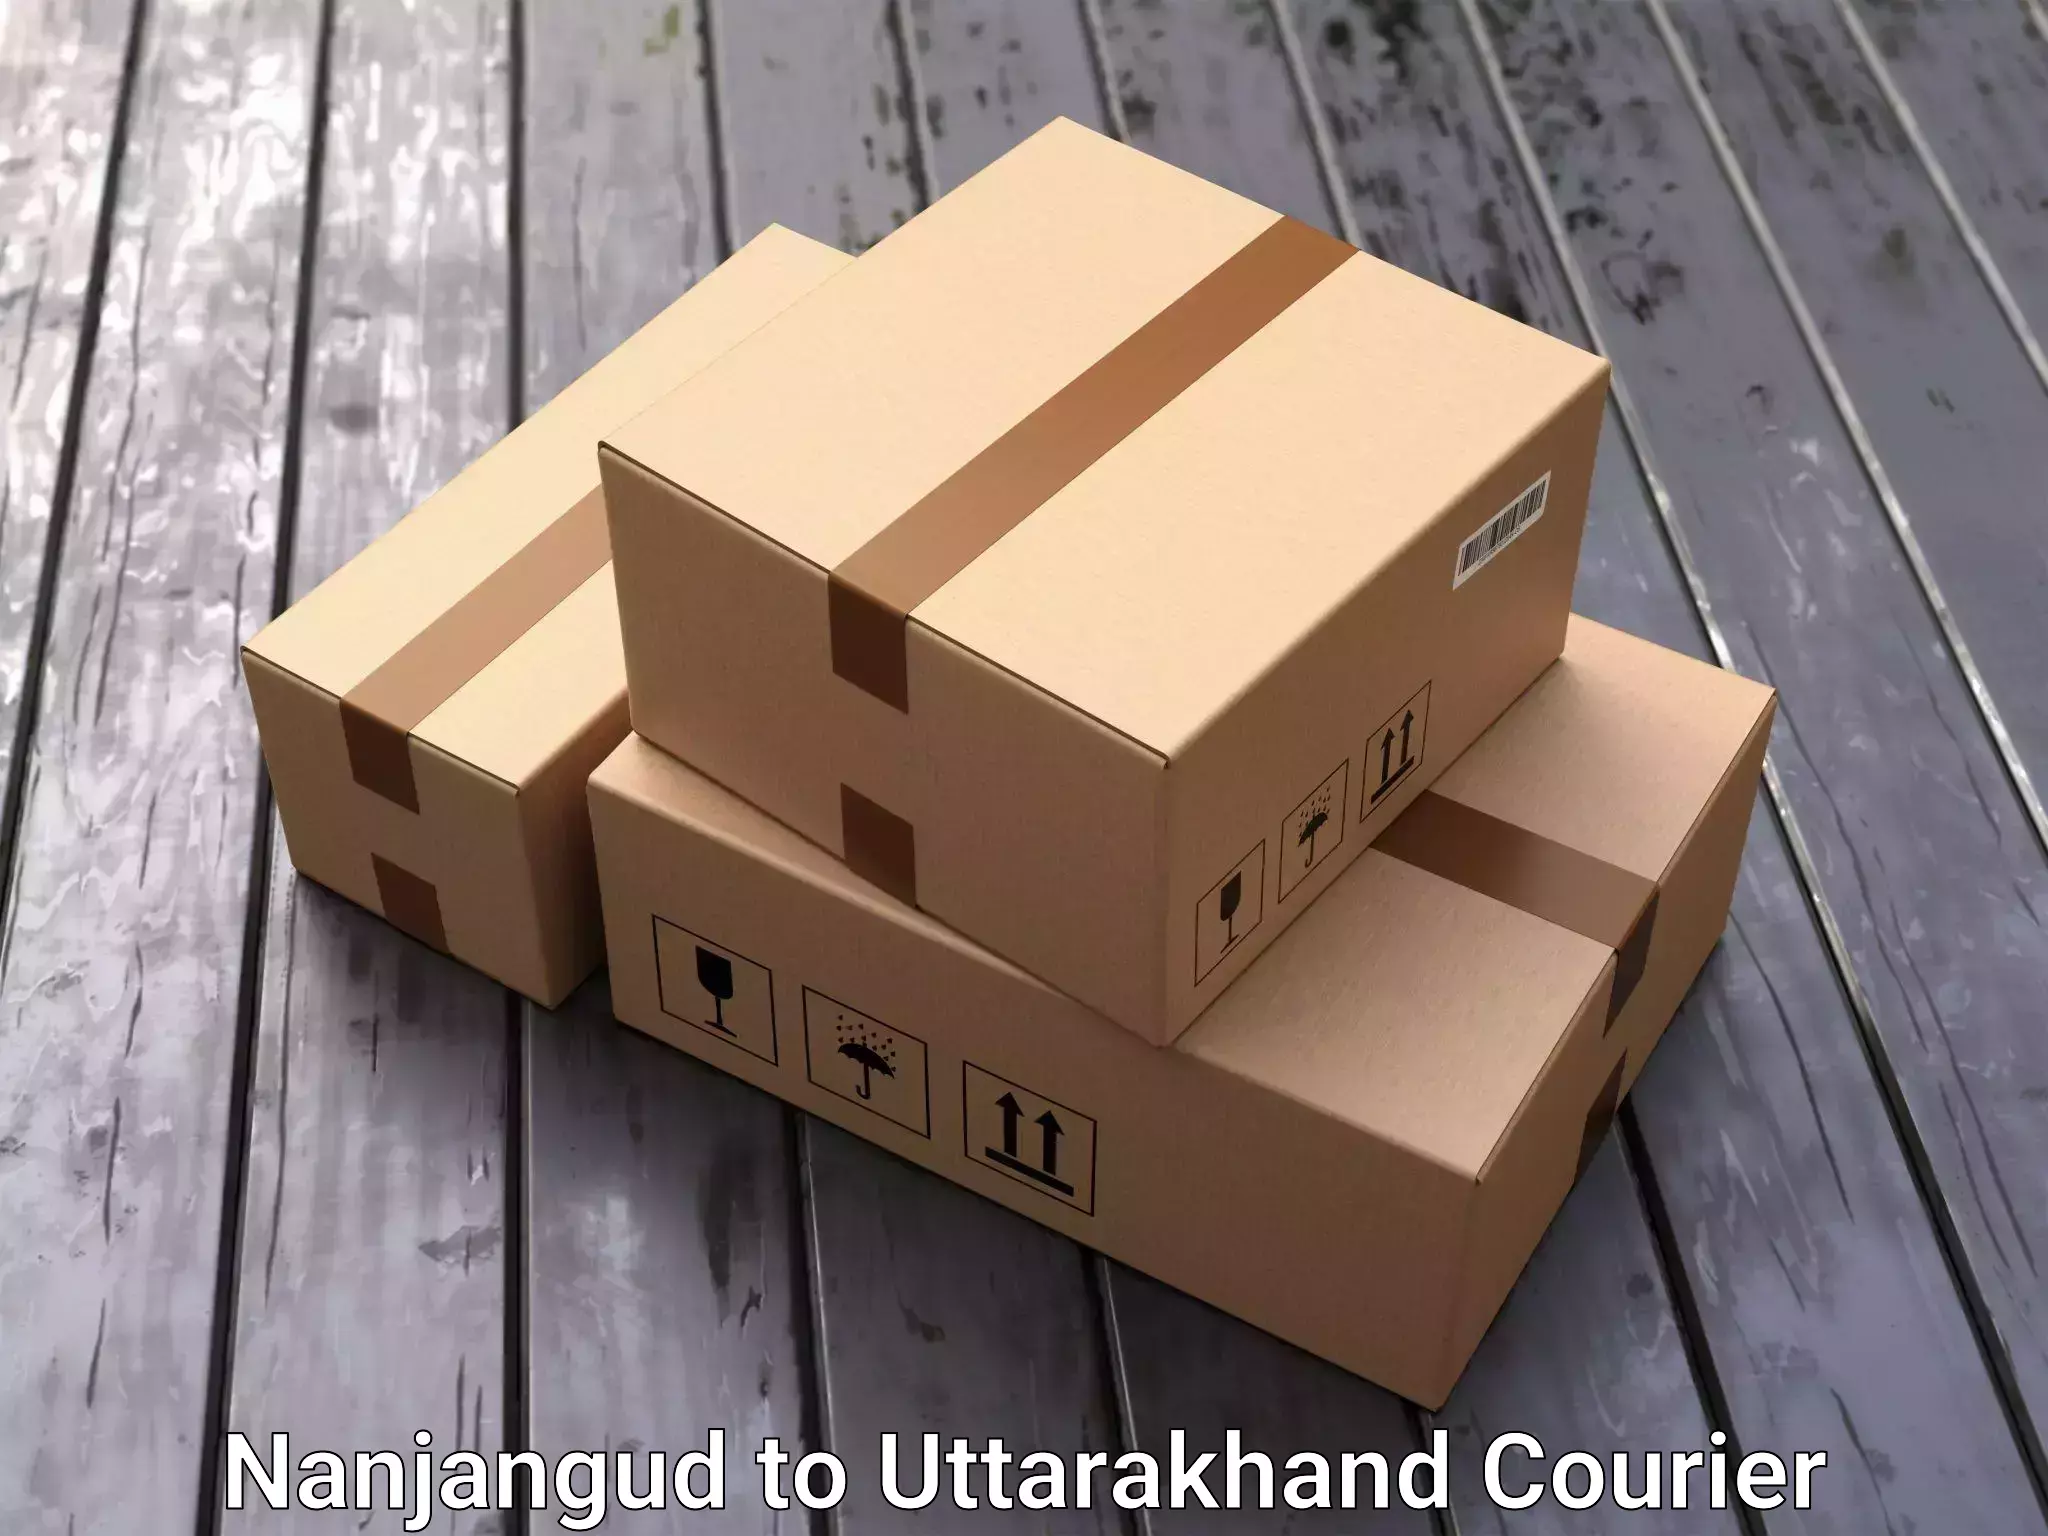 Furniture delivery service Nanjangud to Kotdwara